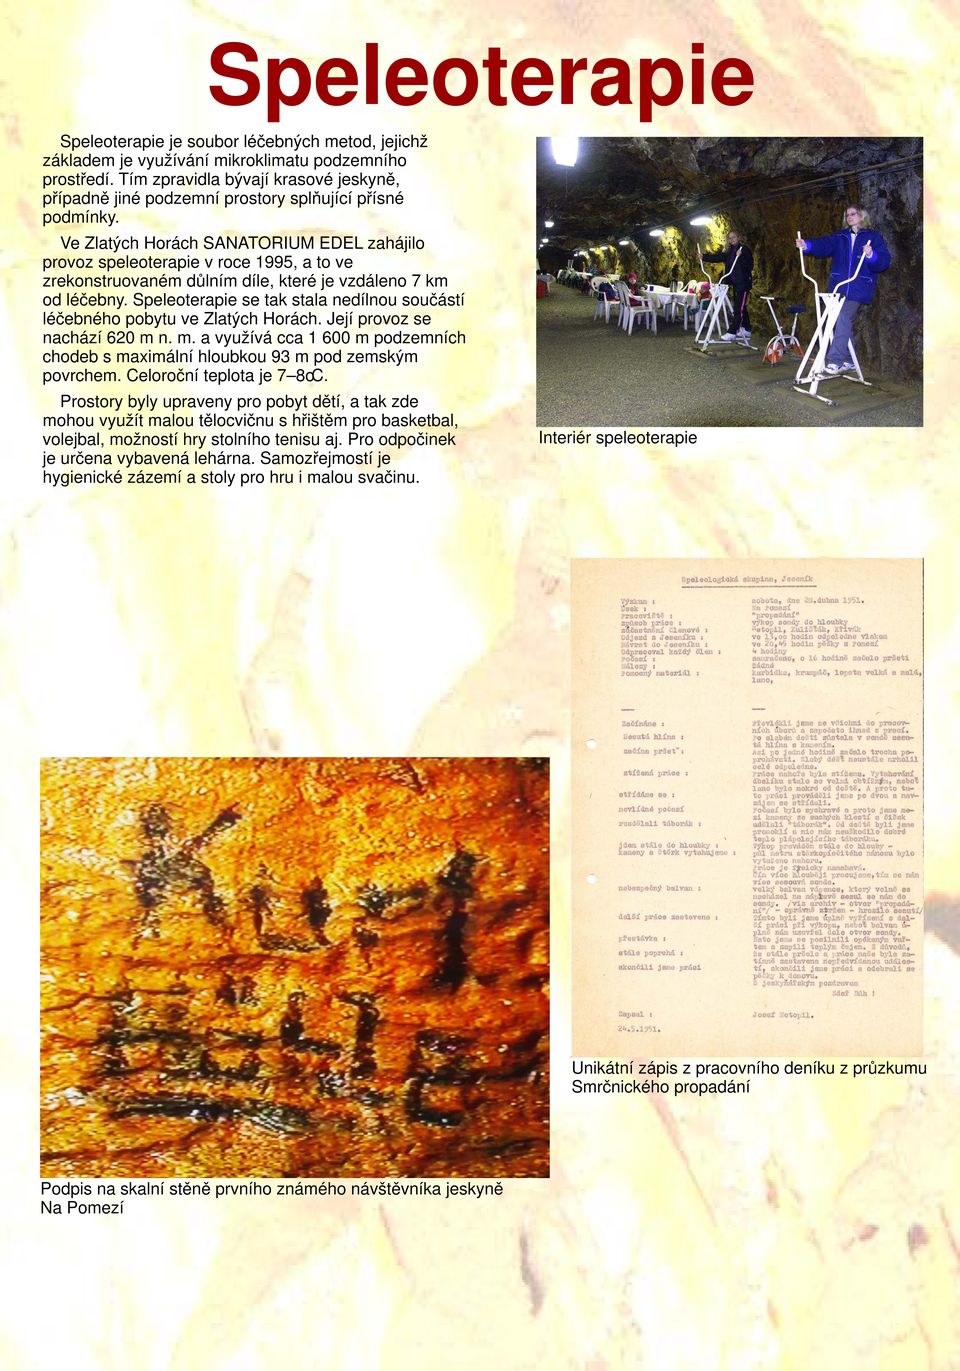 Ve Zlatých Horách SANATORIUM EDEL zahájilo provoz speleoterapie v roce 1995, a to ve zrekonstruovaném důlním díle, které je vzdáleno 7 km od léčebny.